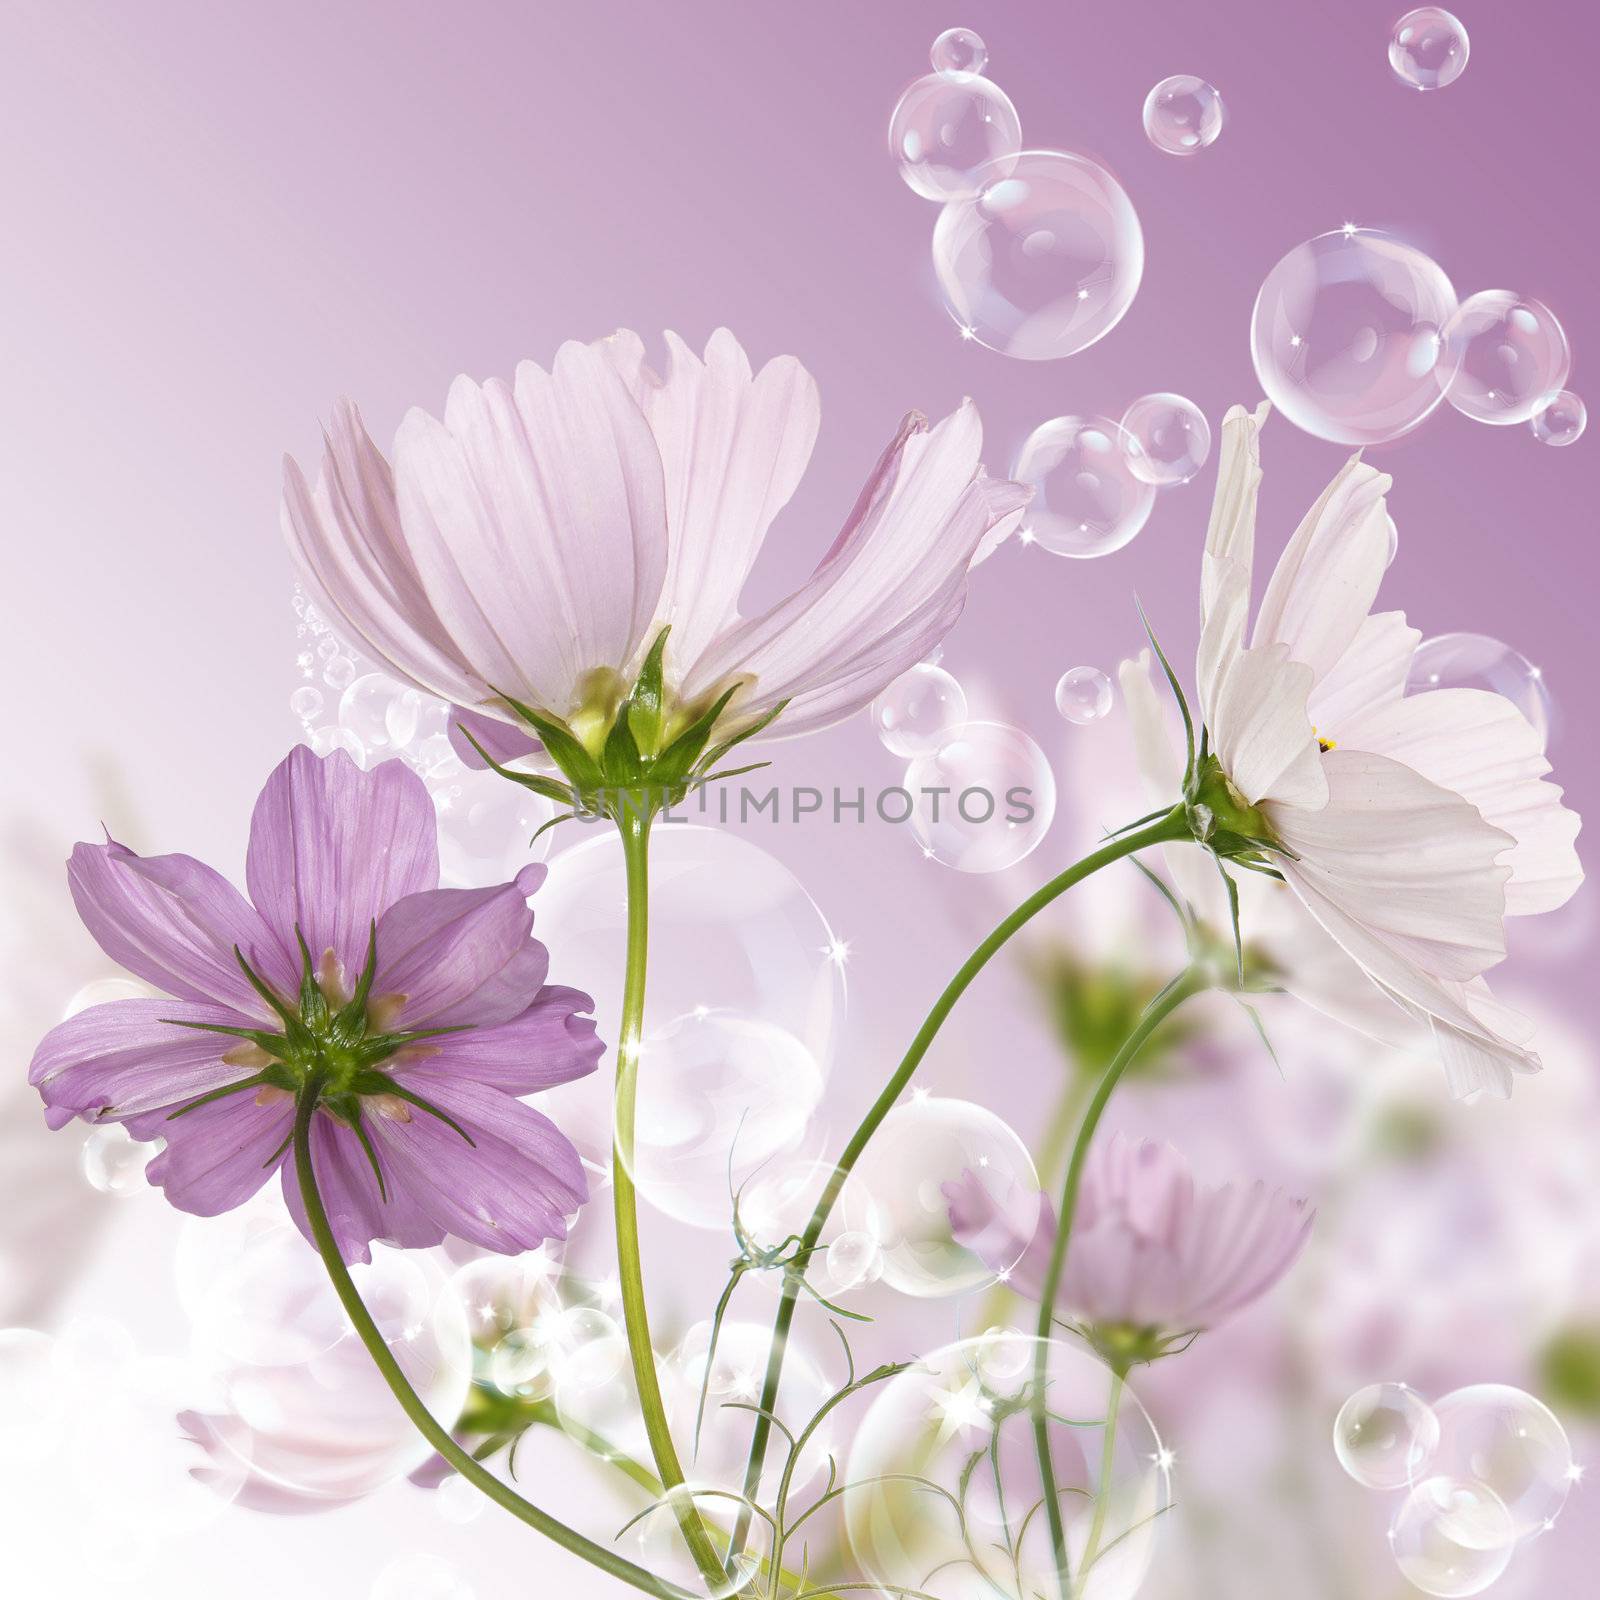 Decorative garden flowers by sergey150770SV